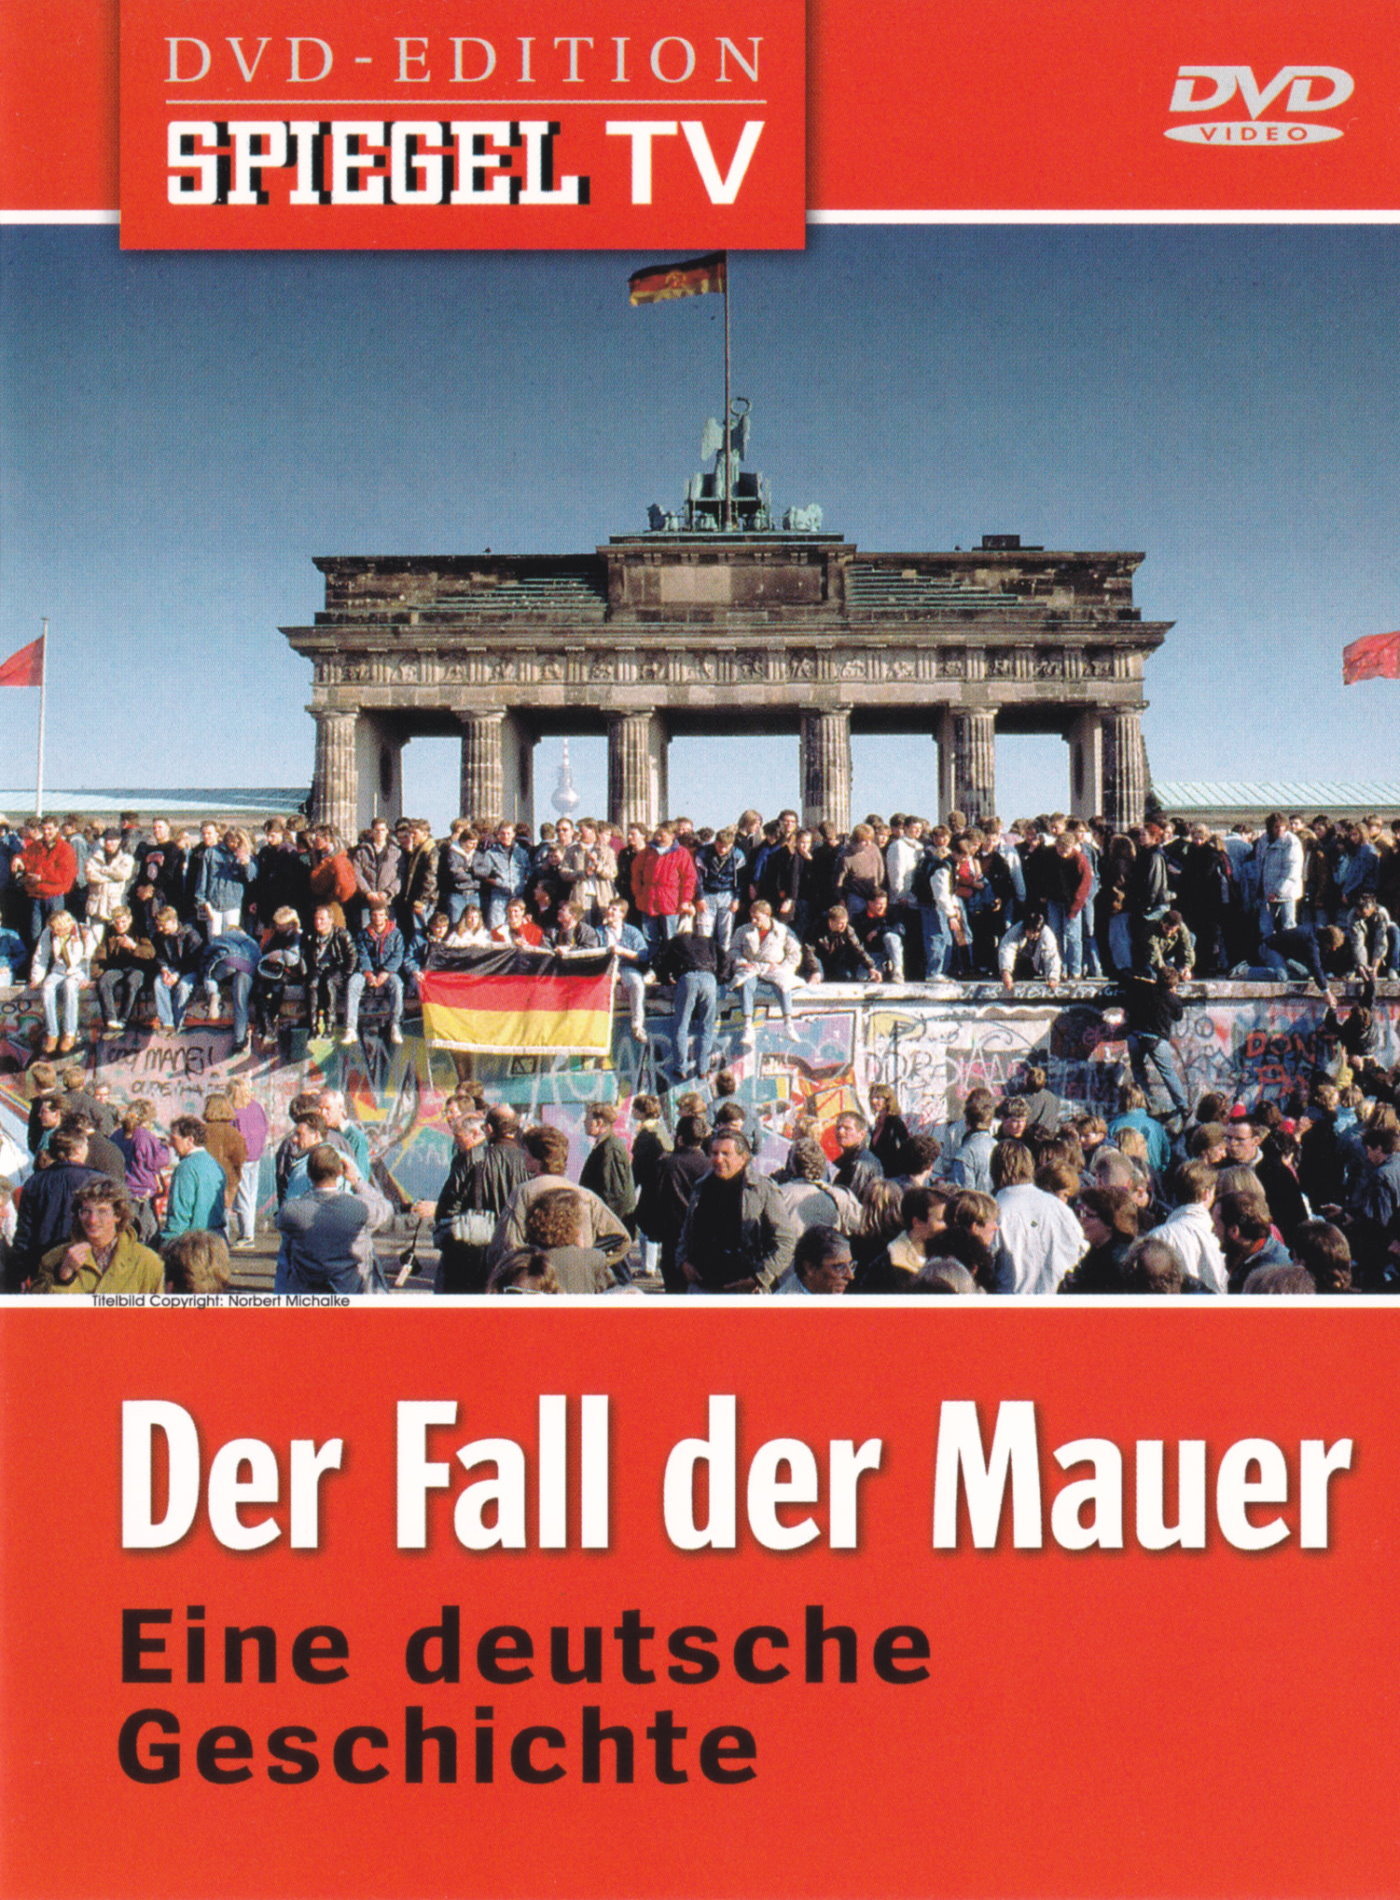 Cover - Der Fall der Mauer - Eine Deutsche Geschichte.jpg